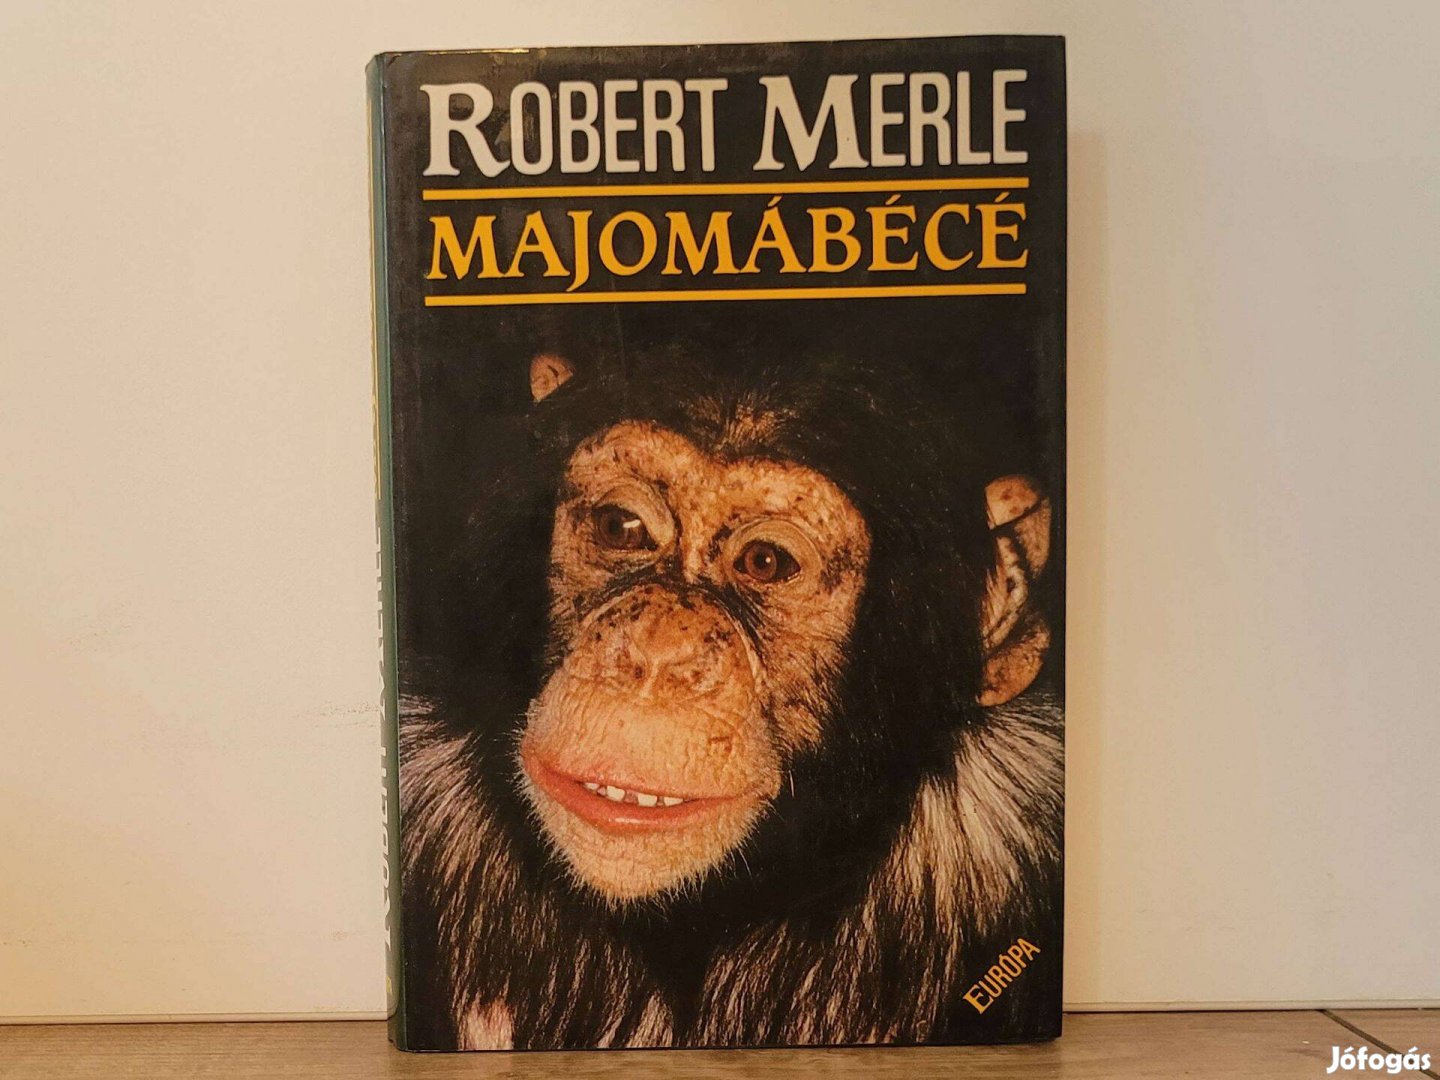 Majomábécé - Robert Merle könyv eladó